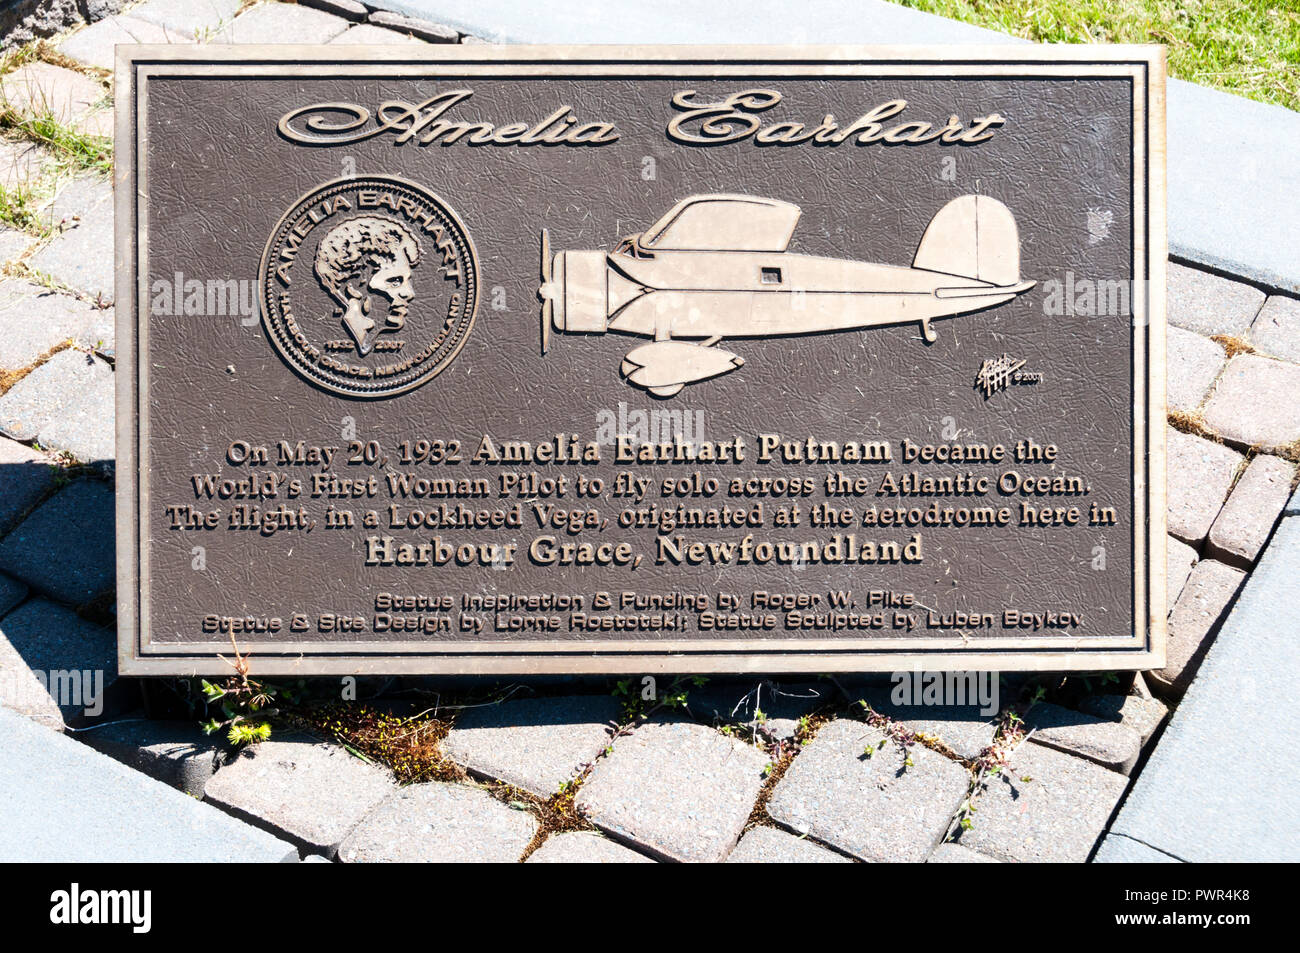 Plakette erste weibliche Alleinflug über den Atlantik zu gedenken von Amelia Earhart. Harbour Grace, Neufundland, Ausgangspunkt ihrer Flug. Stockfoto